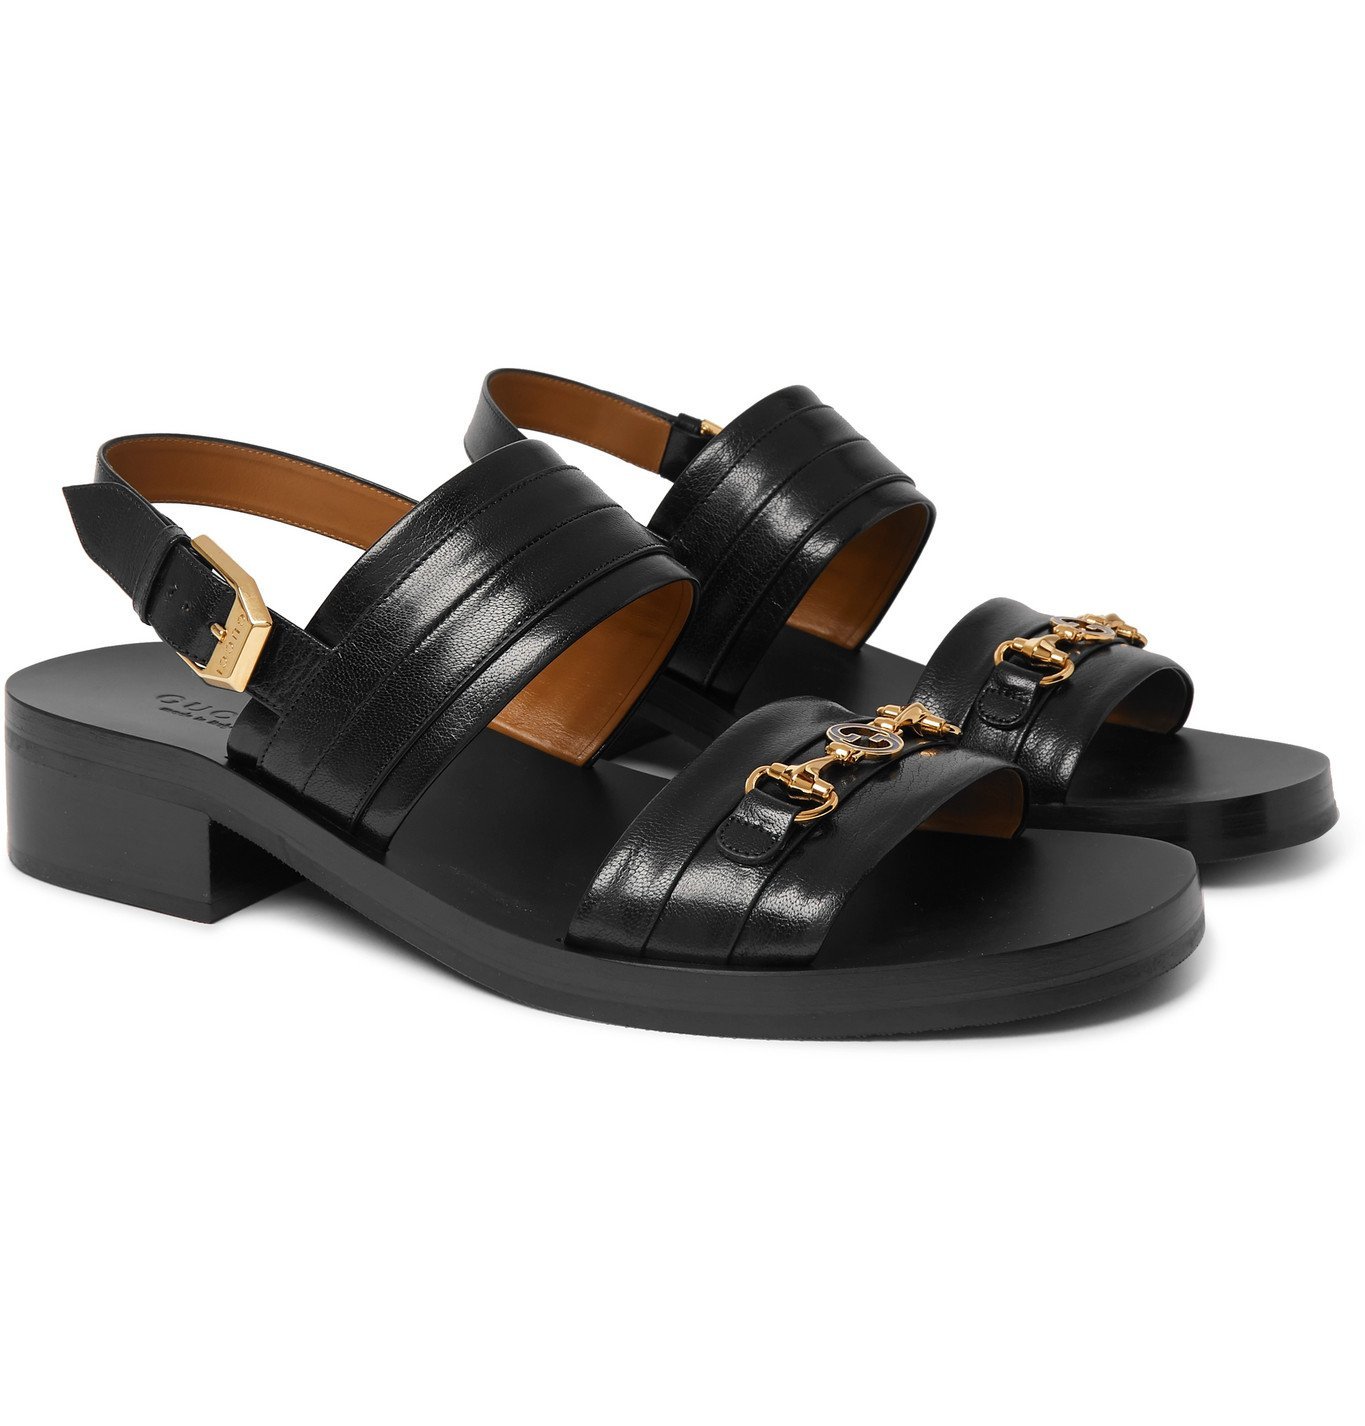 gucci sandals black